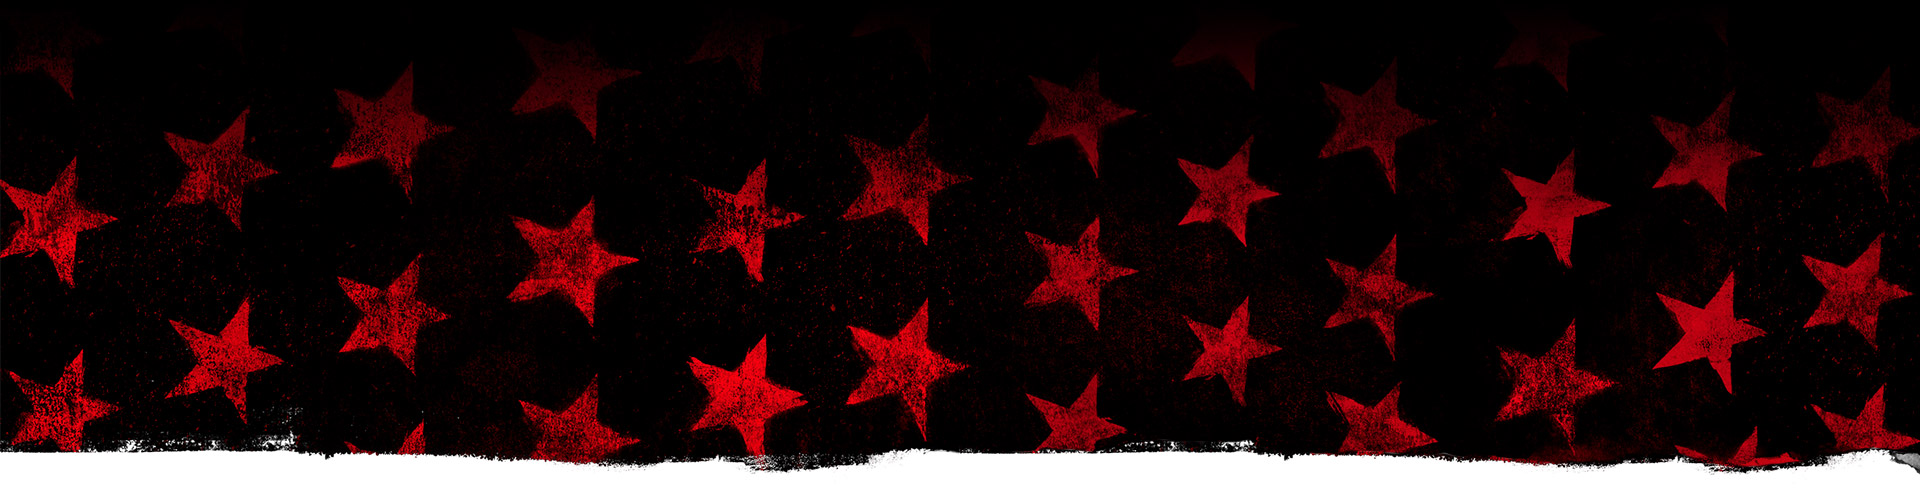 Røde stjerner mot en svart bakgrunn.